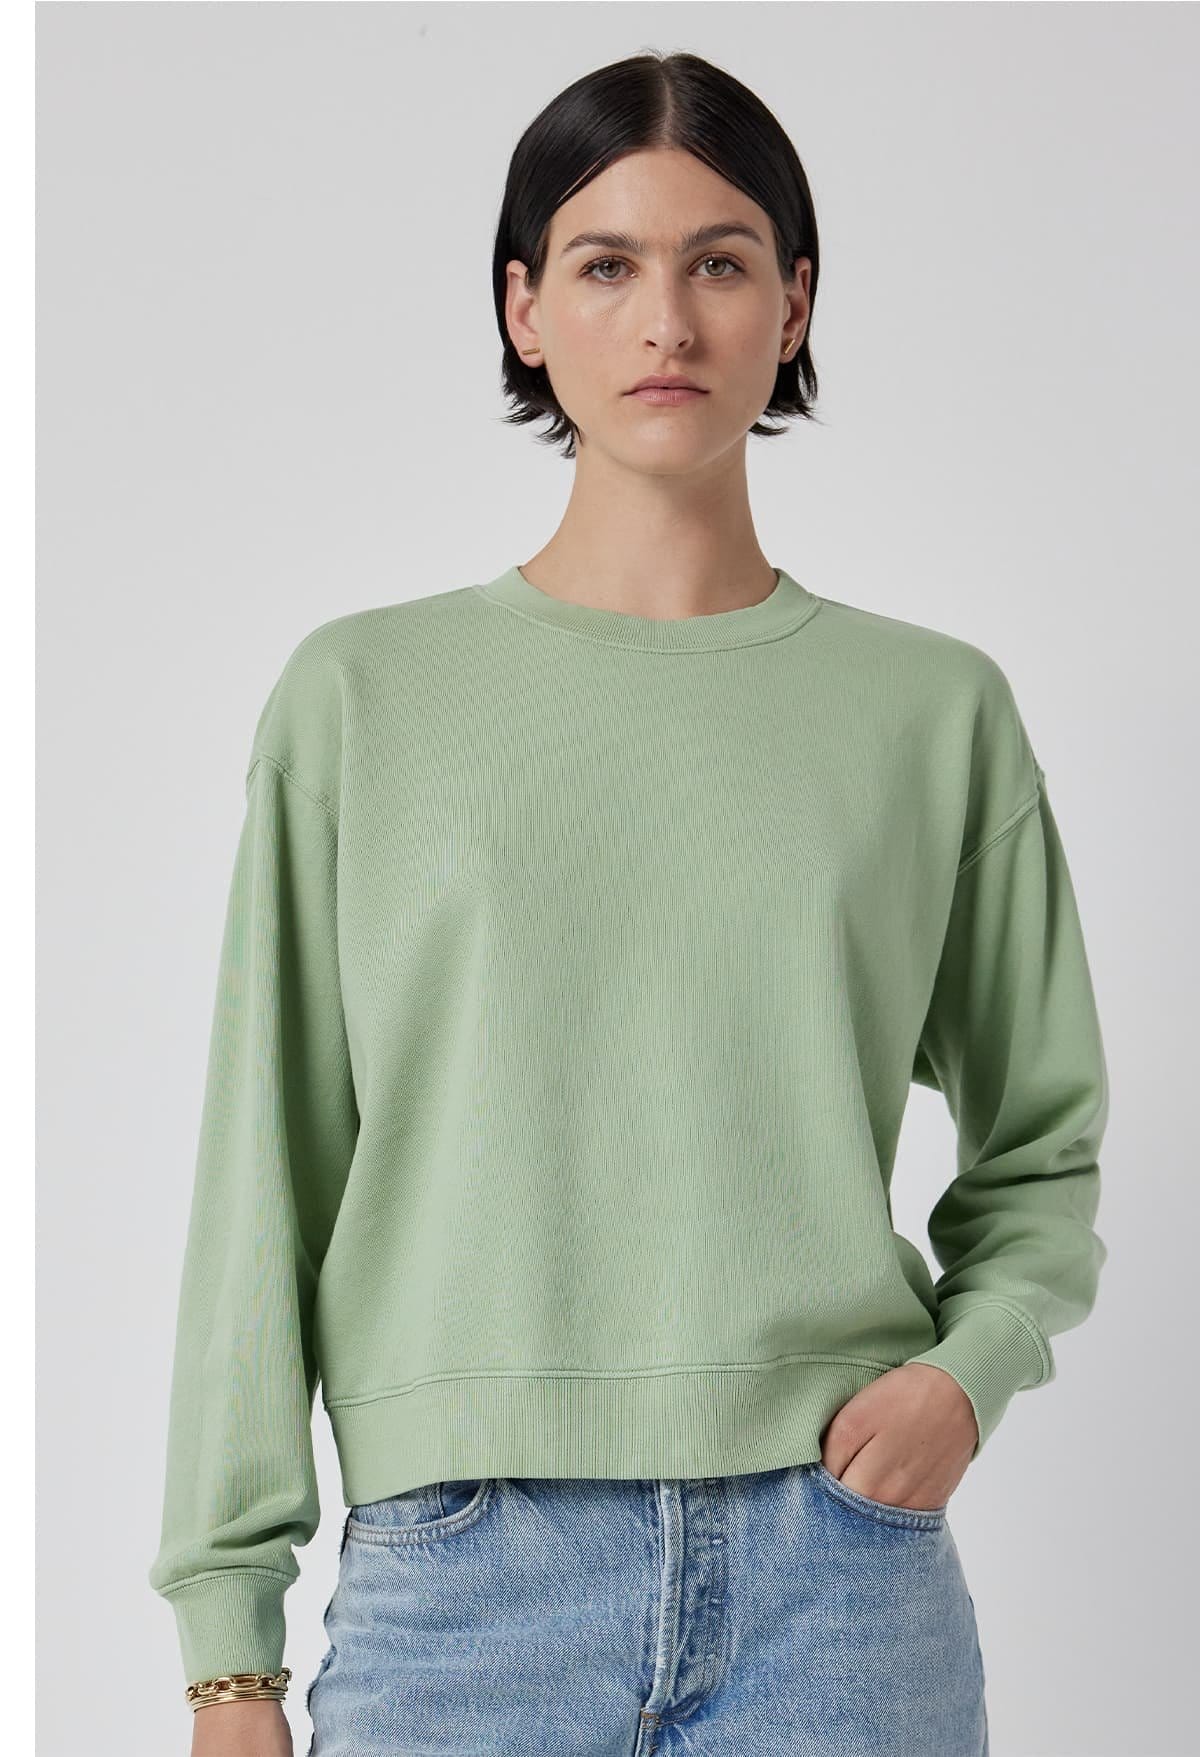 Model wearing the Ynez Sweatshirt